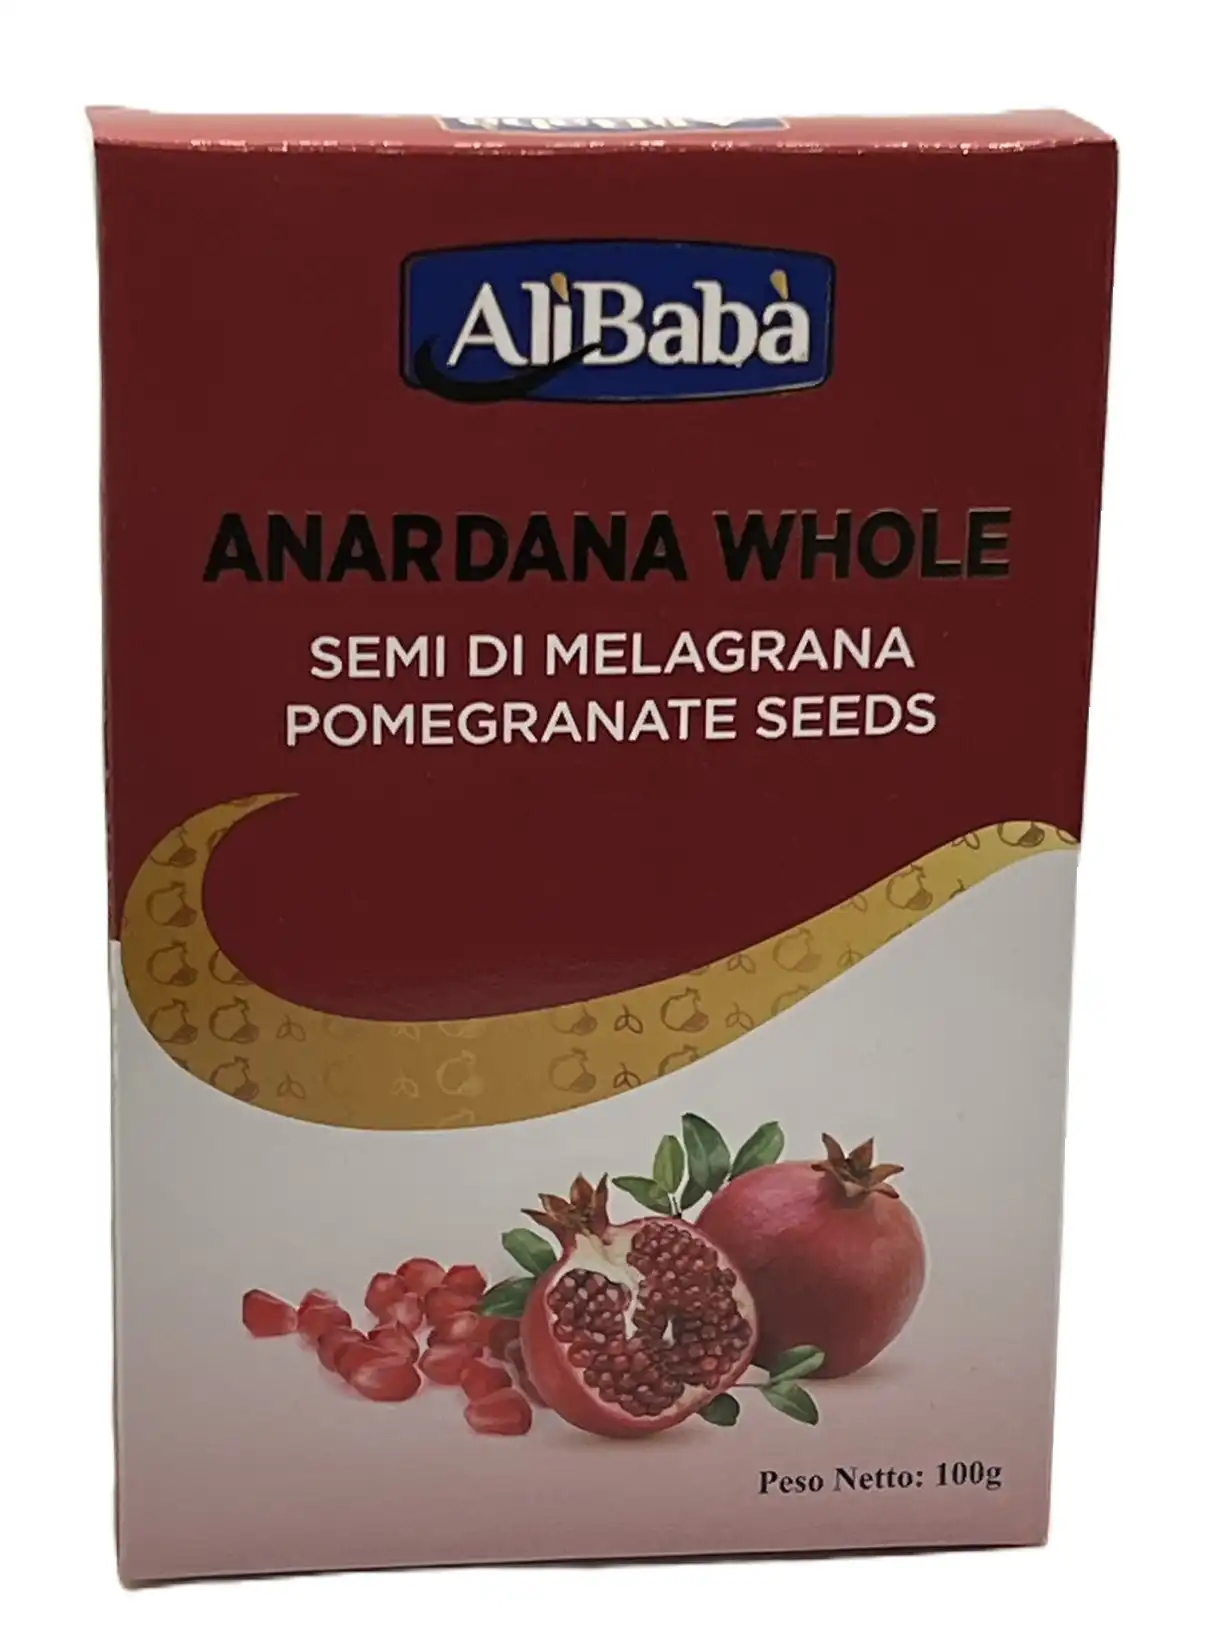 anardana whole semi di melagrana pomegranate seeds-alibaba